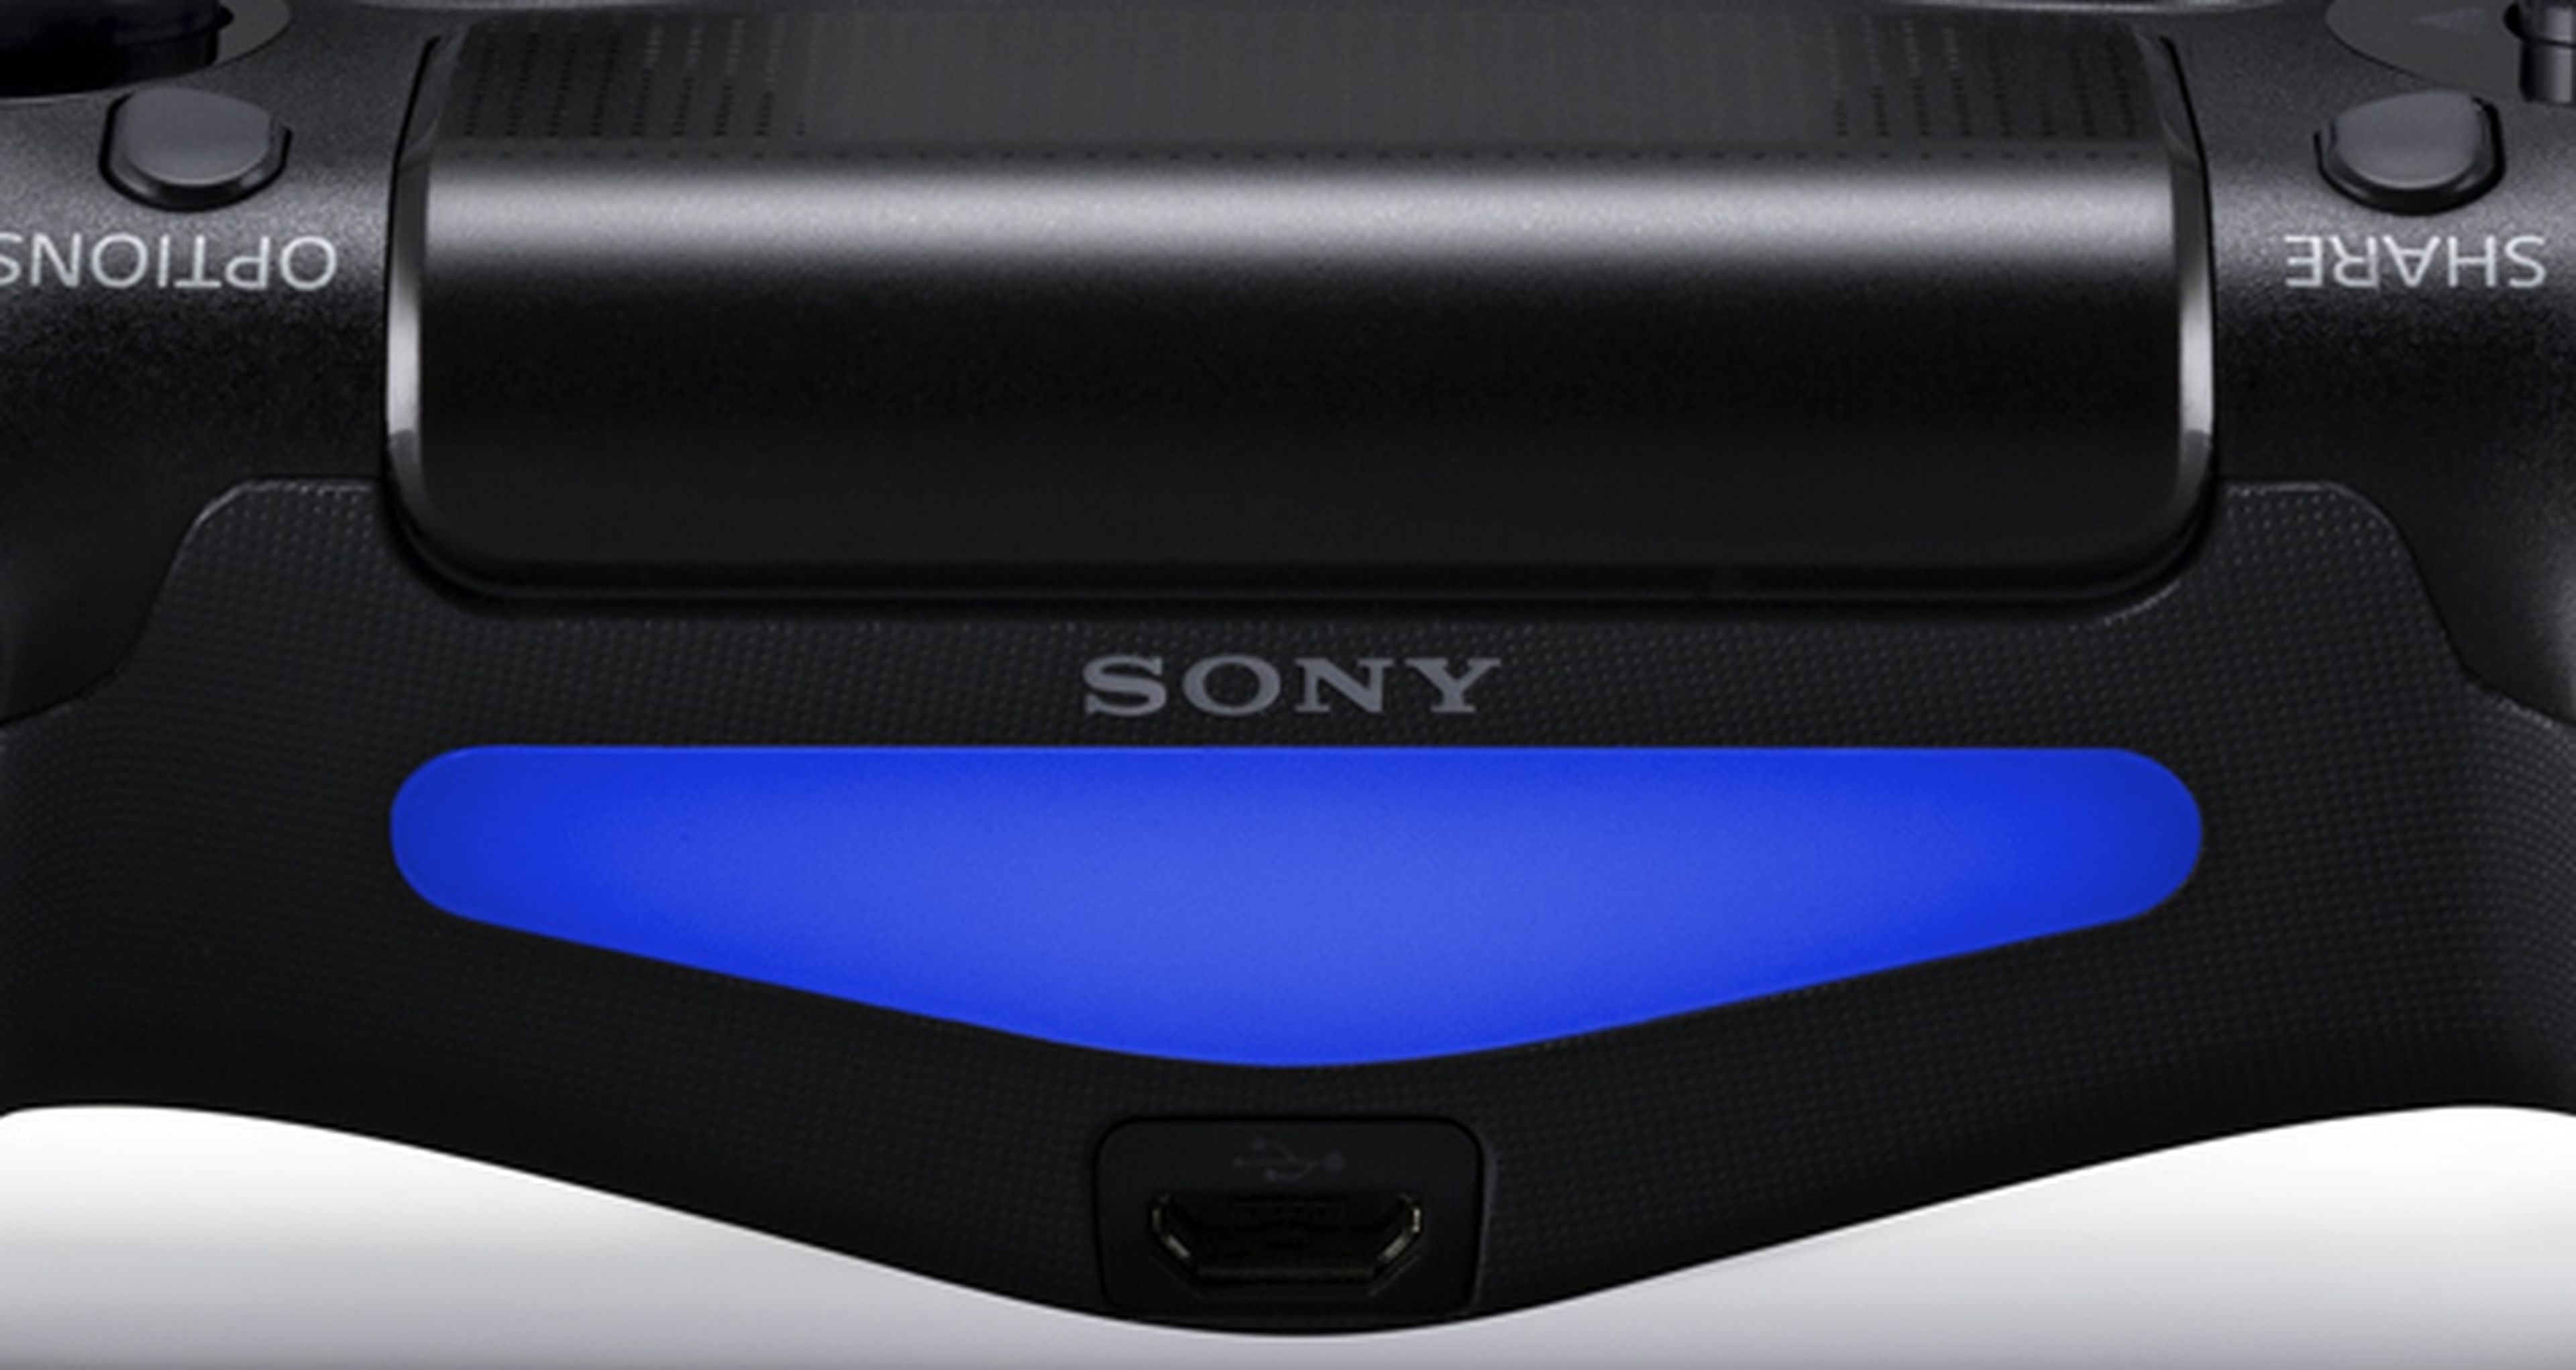 PlayStation 4: Sony no apagará la luz del mando Dualshock, TECNOLOGIA